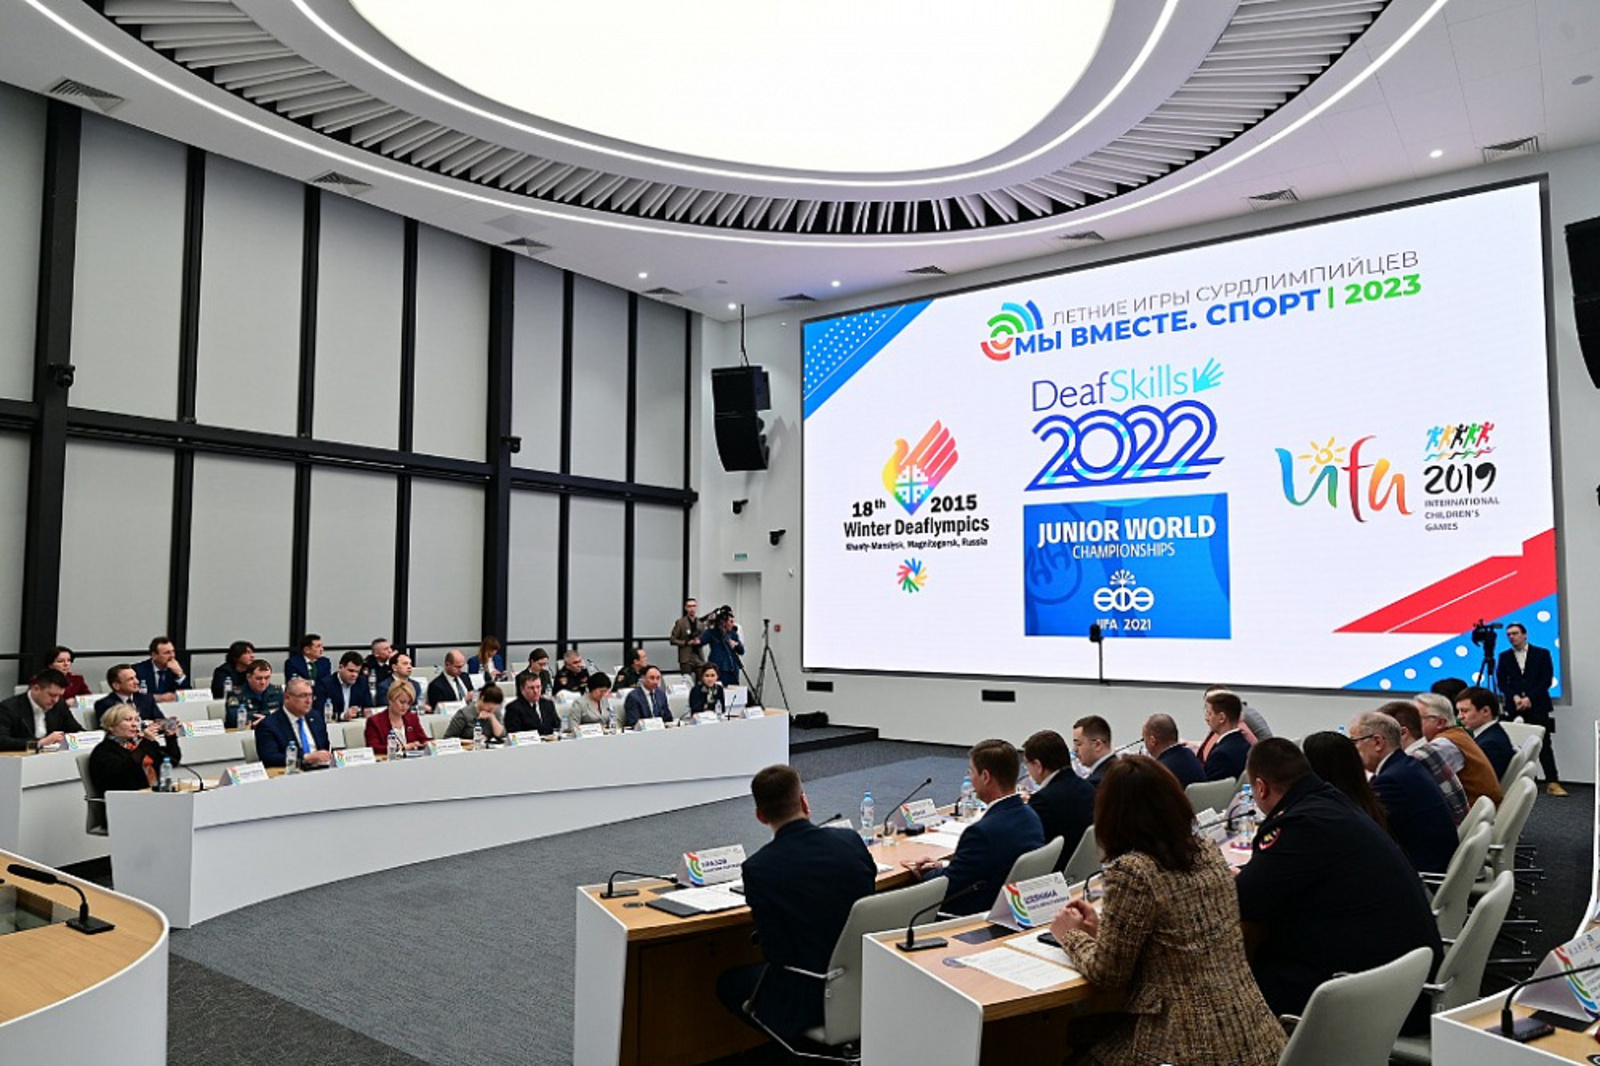 В Уфе прошло первое заседание оргкомитета по подготовке Летних игр сурдлимпийцев 2023 года